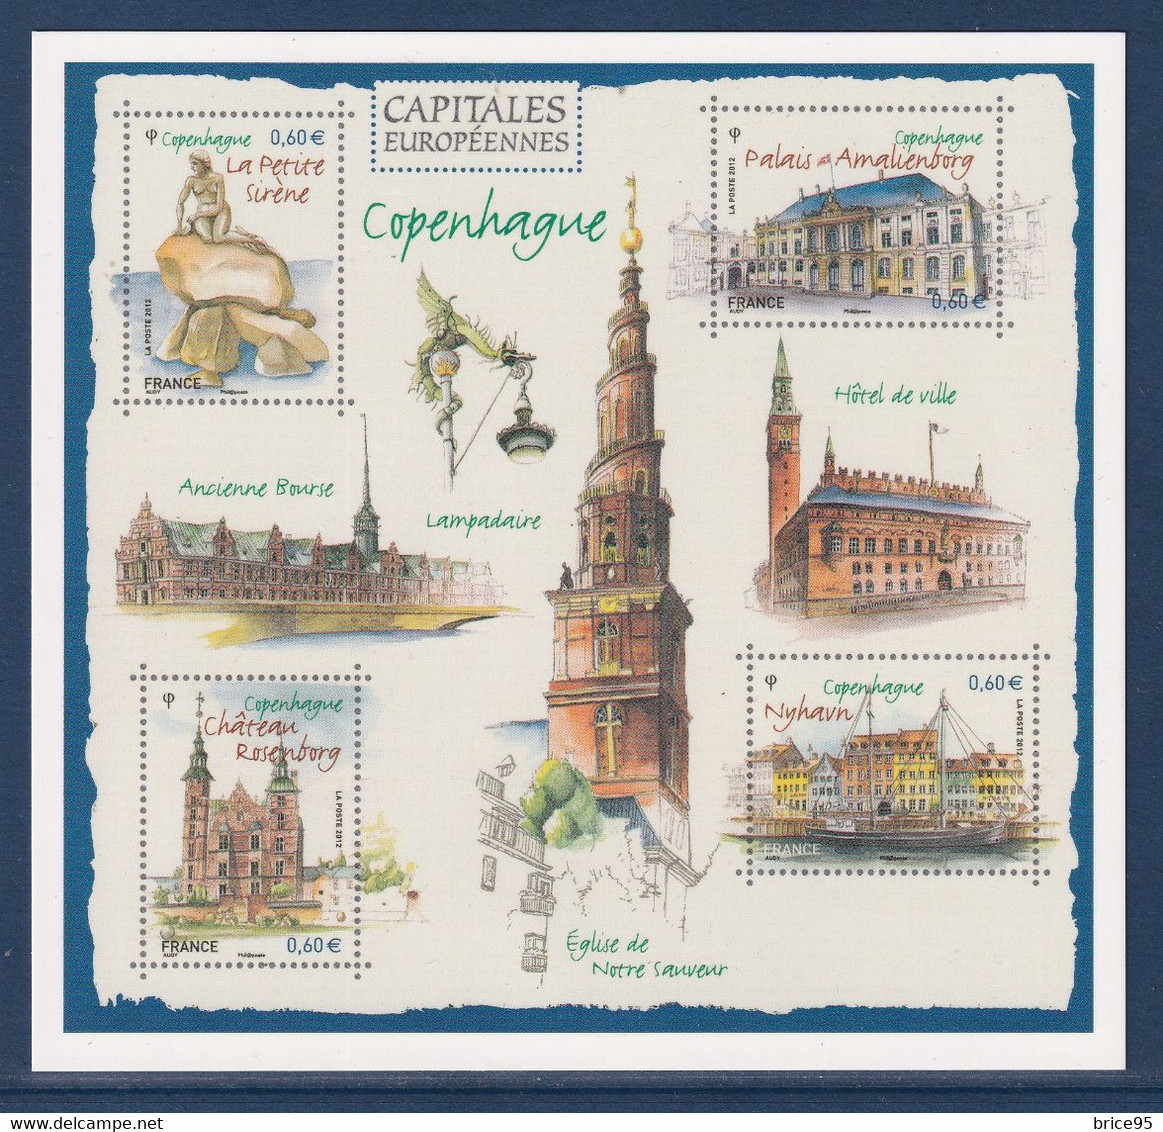 France - Entier Postal - Carte Pré Timbrée - Bloc Copenhague - Capitales Européennes - 2012 - PAP:  Varia (1995-...)